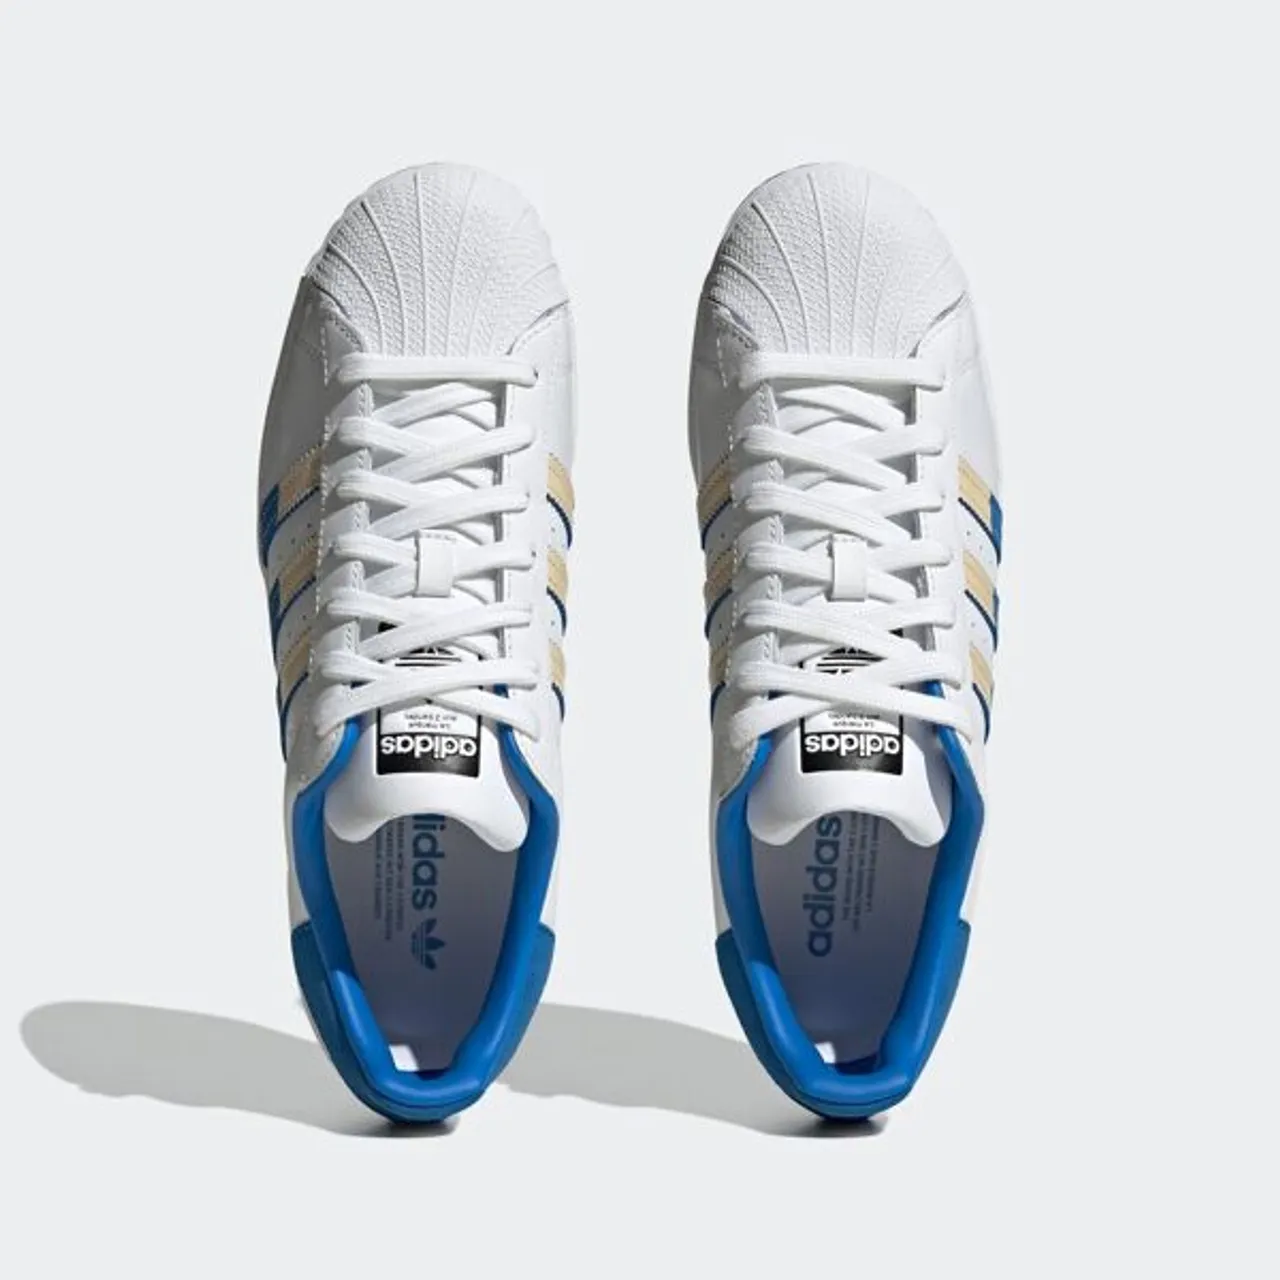 Sneaker ADIDAS ORIGINALS "SUPERSTAR" Gr. 41, bunt (cloud white, sand strata, bright royal) Schuhe Schnürhalbschuhe